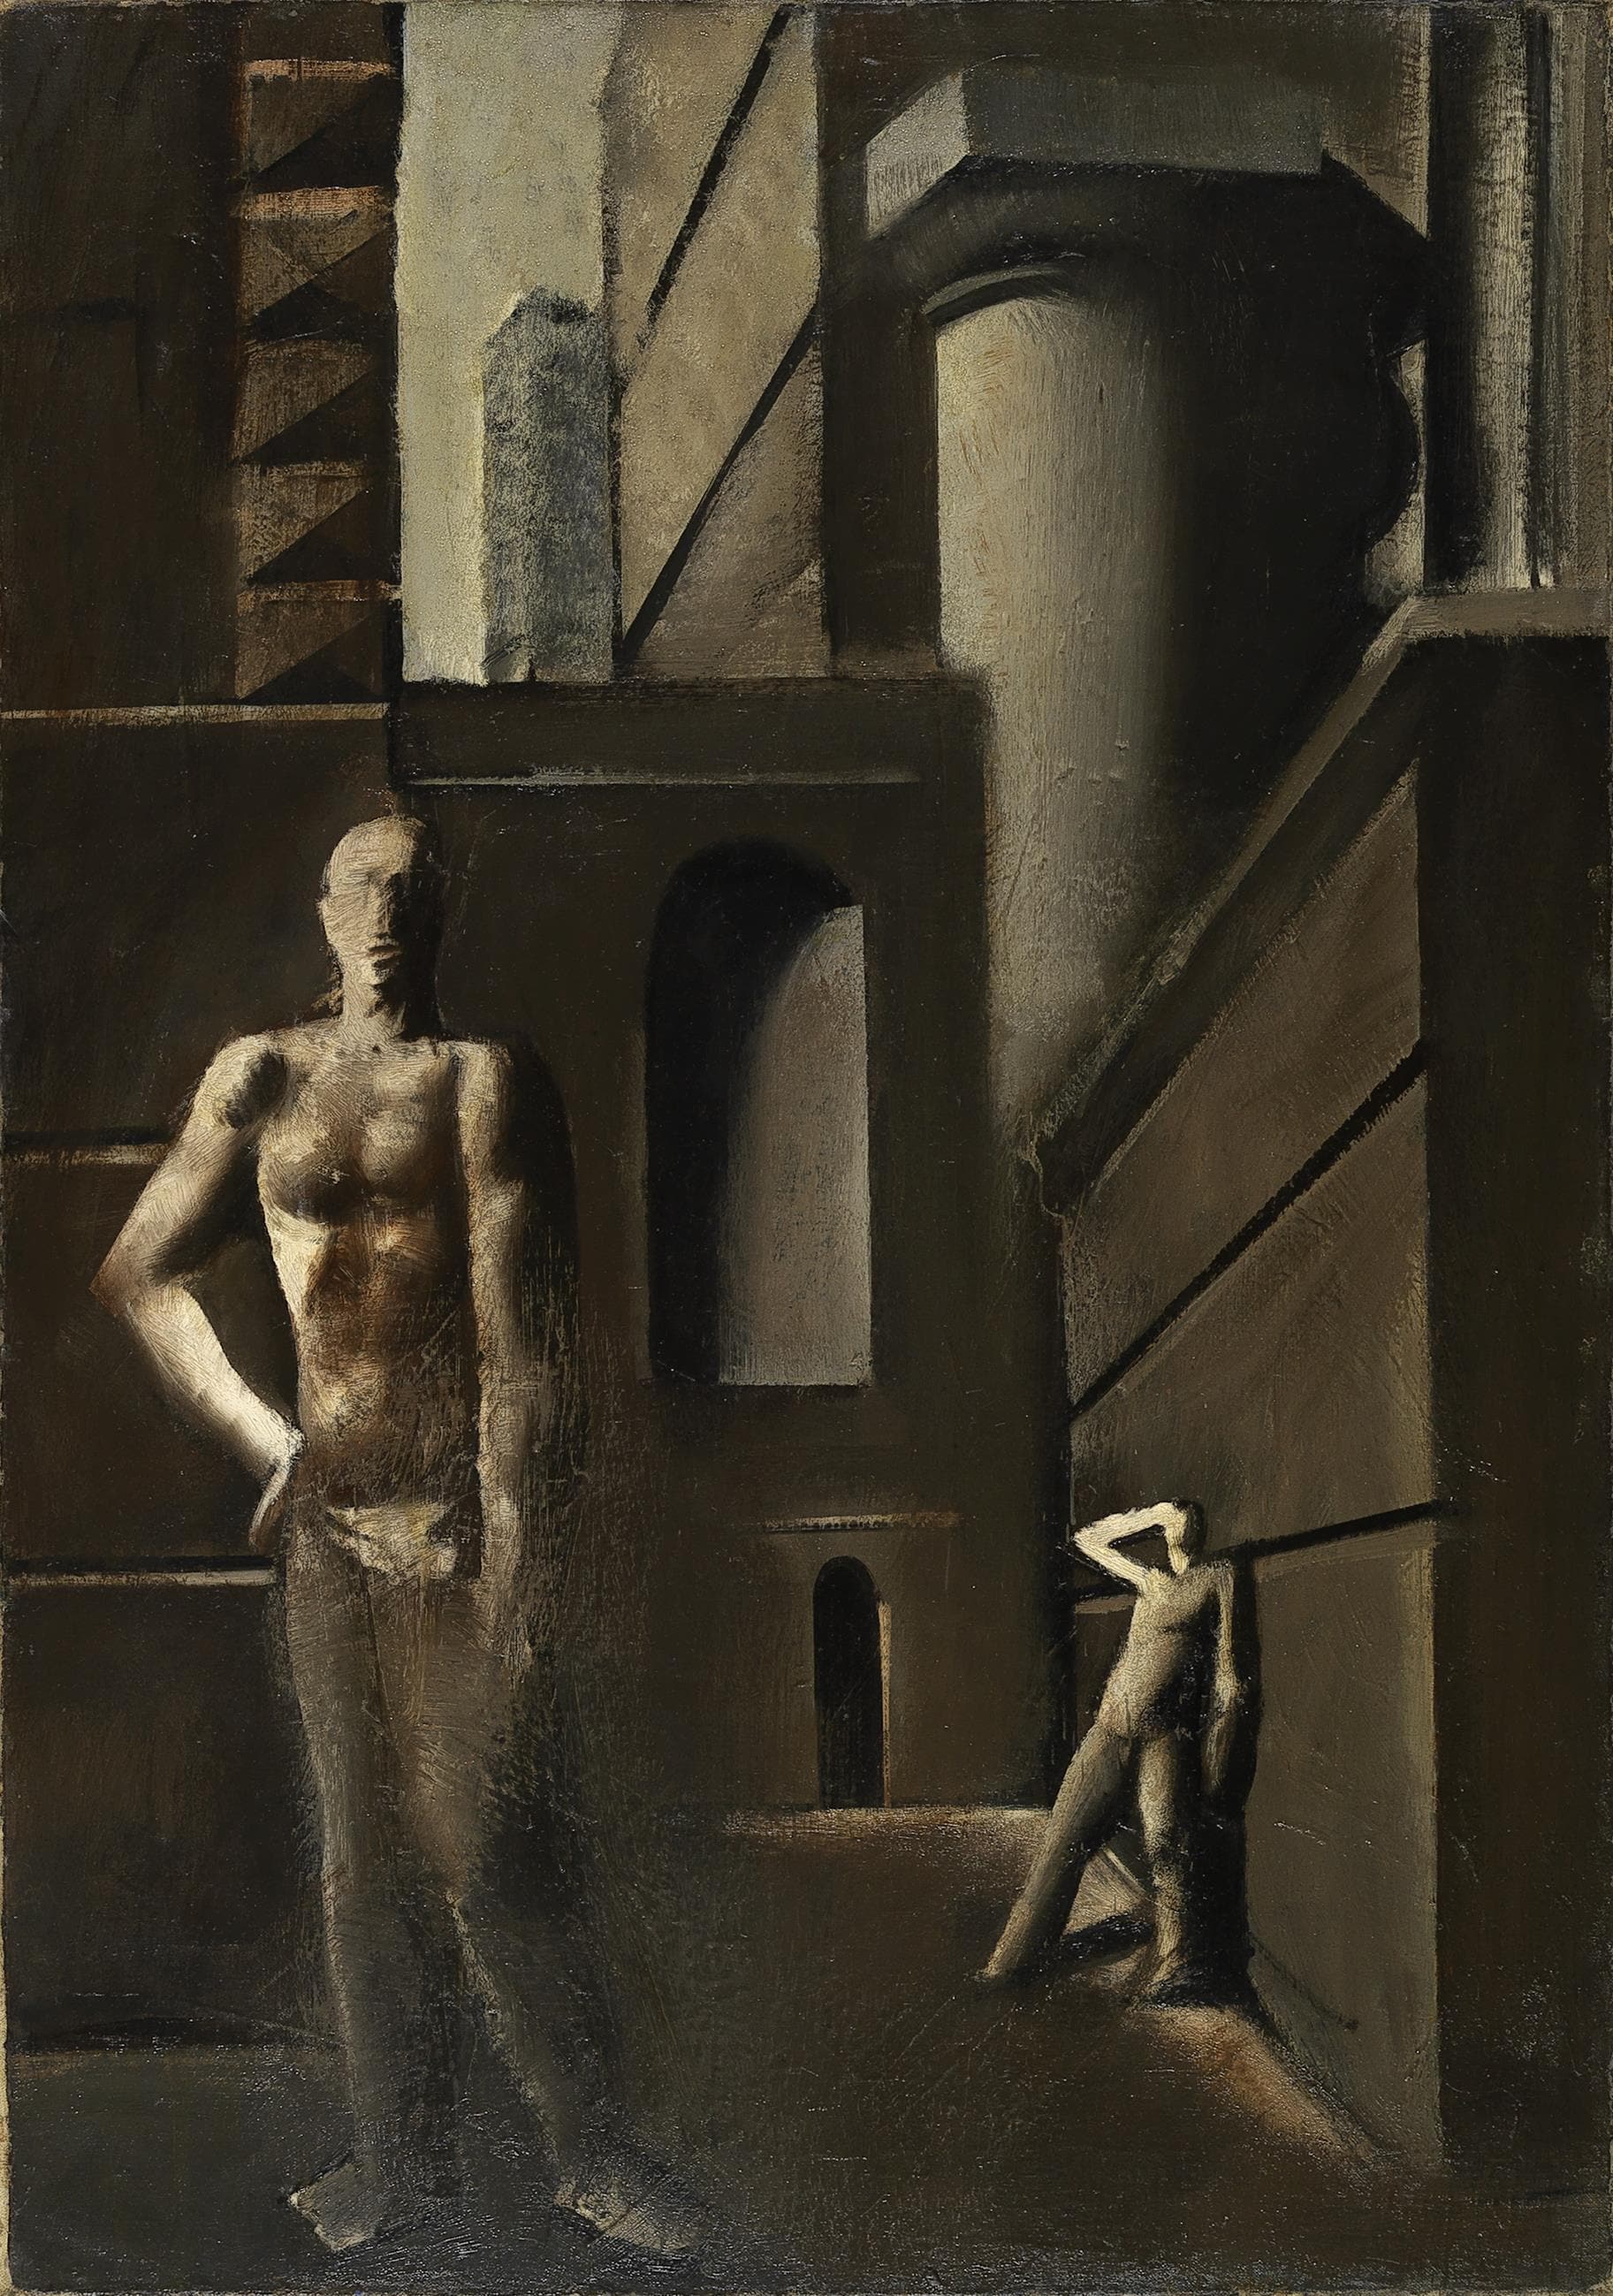 Mario Sironi: Composizione (I costruttori), 1928-29, olio su tela, 100 x 70 cm, Milano, Museo del Novecento, collezione Boschi © Mario Sironi, by SIAE 2021 